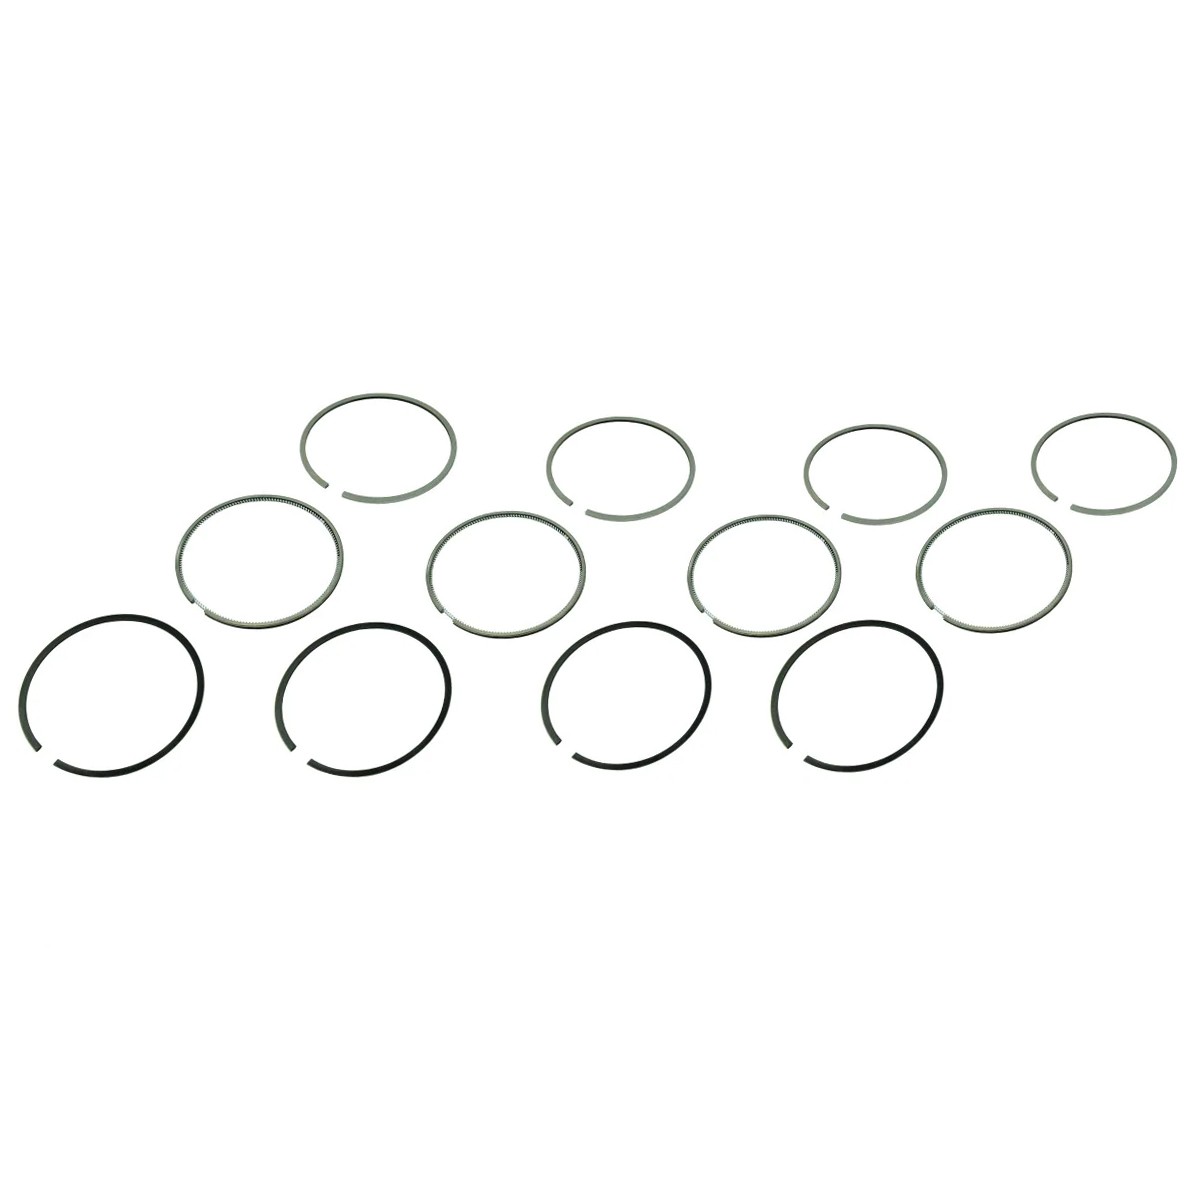 Pístní kroužky Kubota V2607 / 87 mm STD / (4 x 2,00 x 1,50 x 3,00) / 1J701-21052